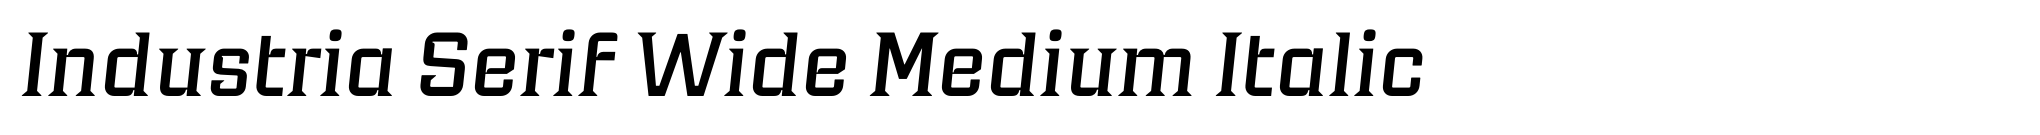 Industria Serif Wide Medium Italic image